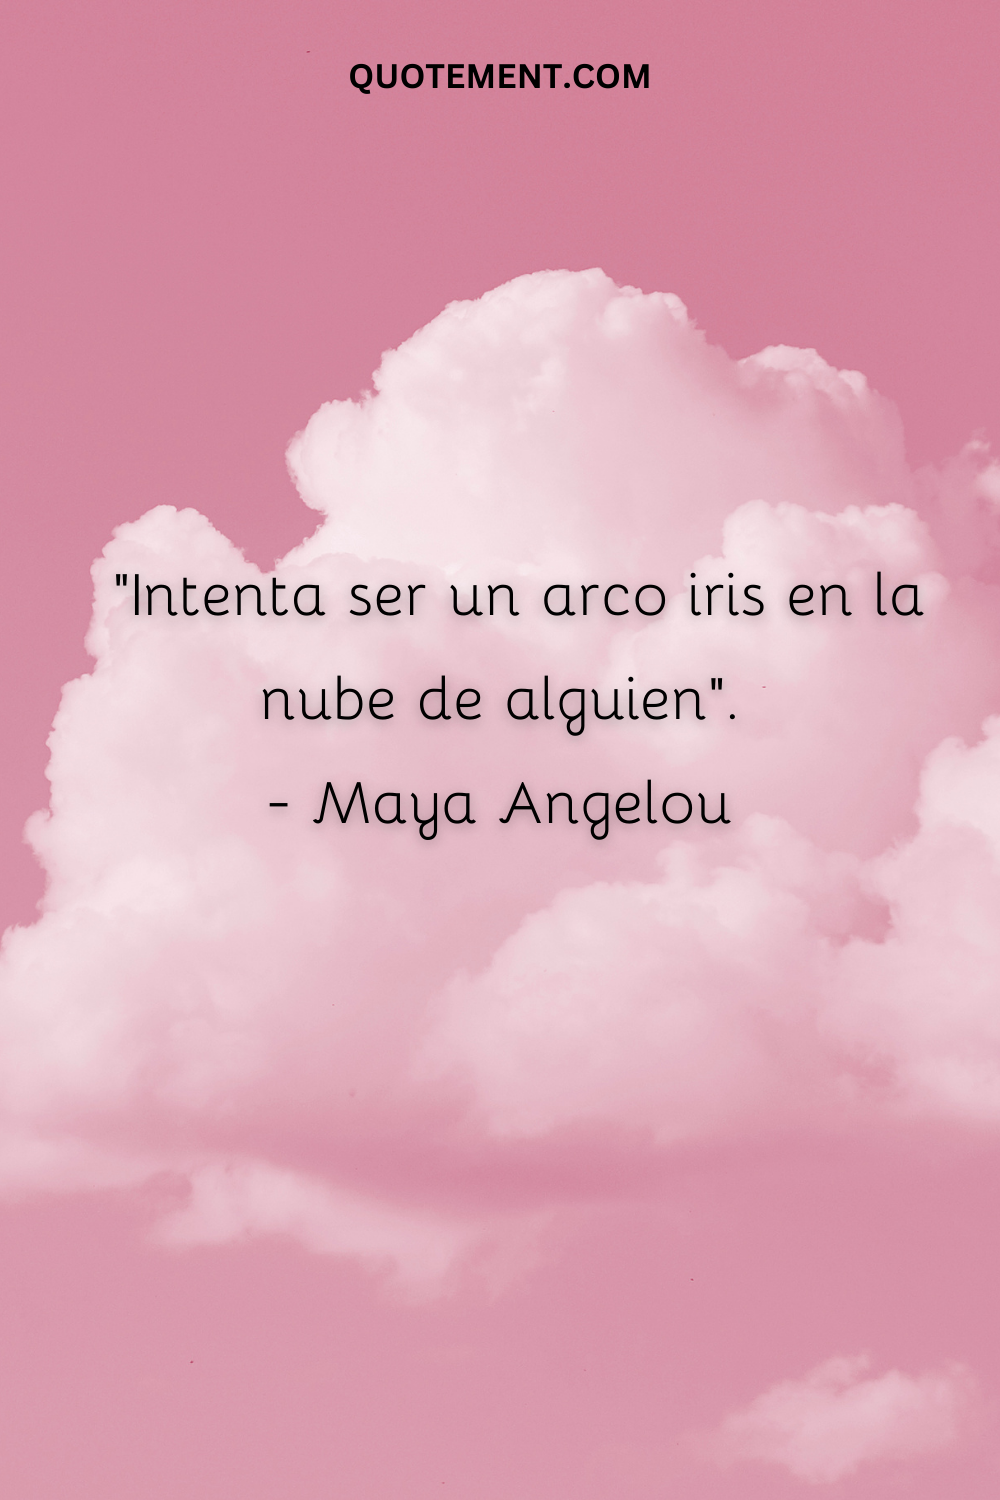 "Intenta ser un arco iris en la nube de alguien". - Maya Angelou